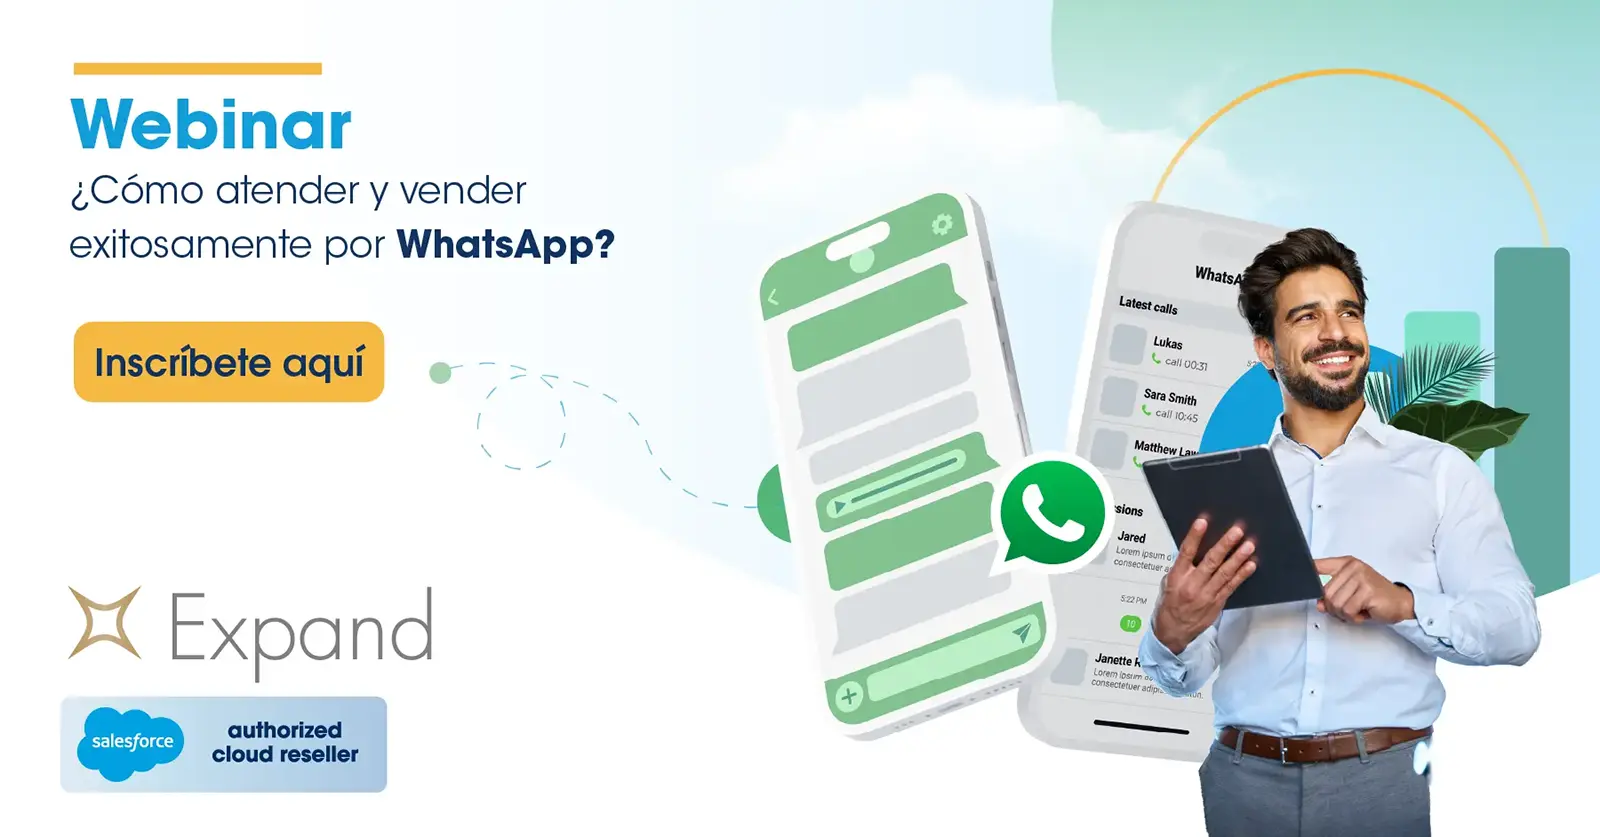 Webinar ¿Cómo atender y vender exitosamente por WhatsApp?